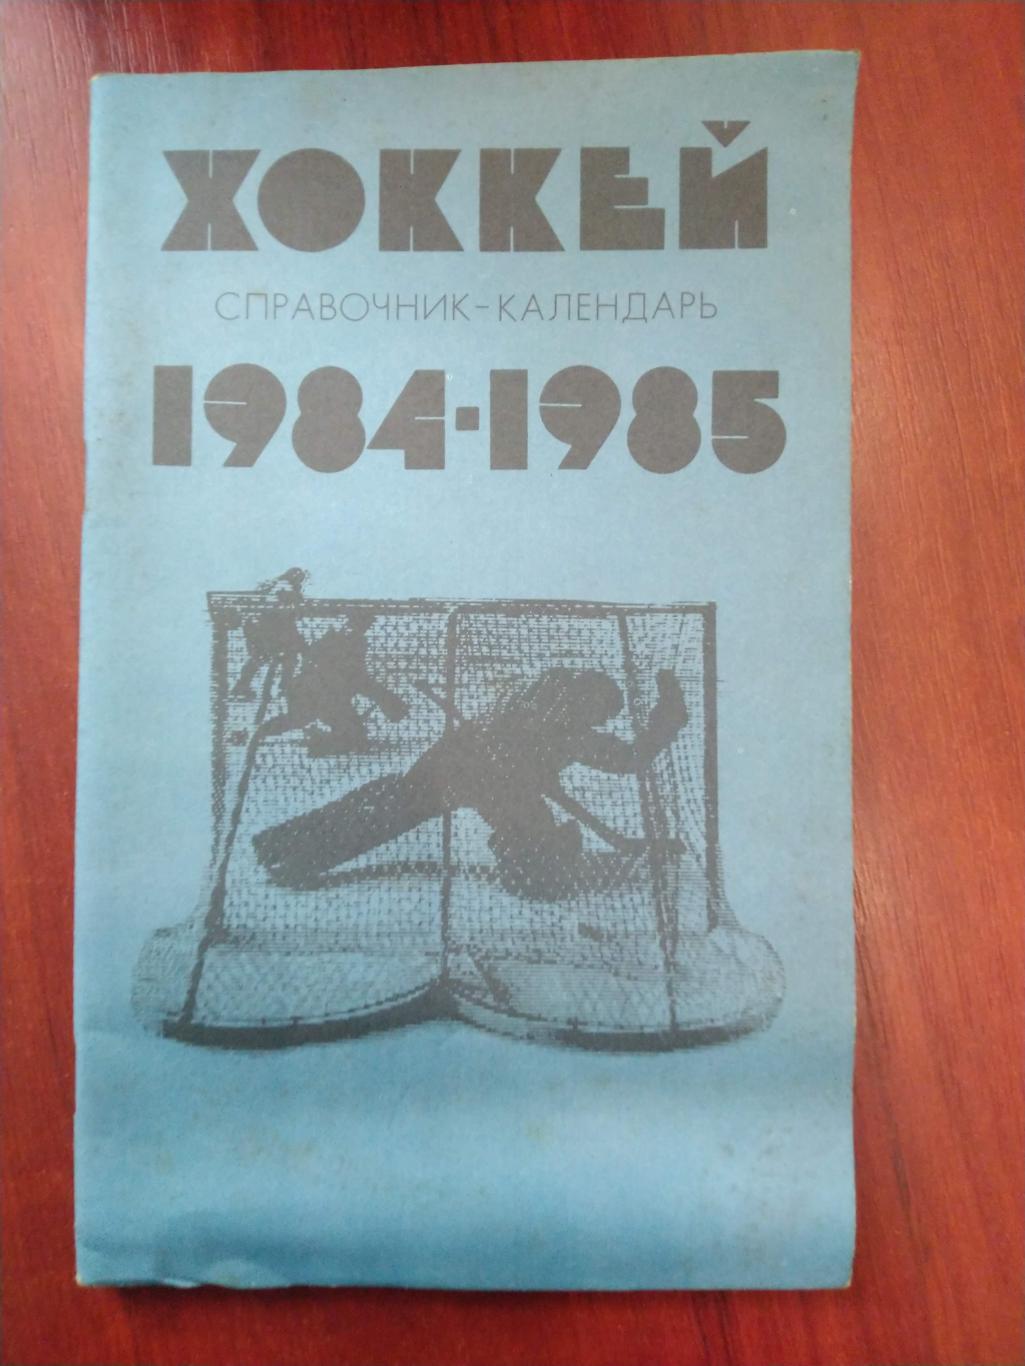 Хоккей Календарь-справочник 1984-85 Москва